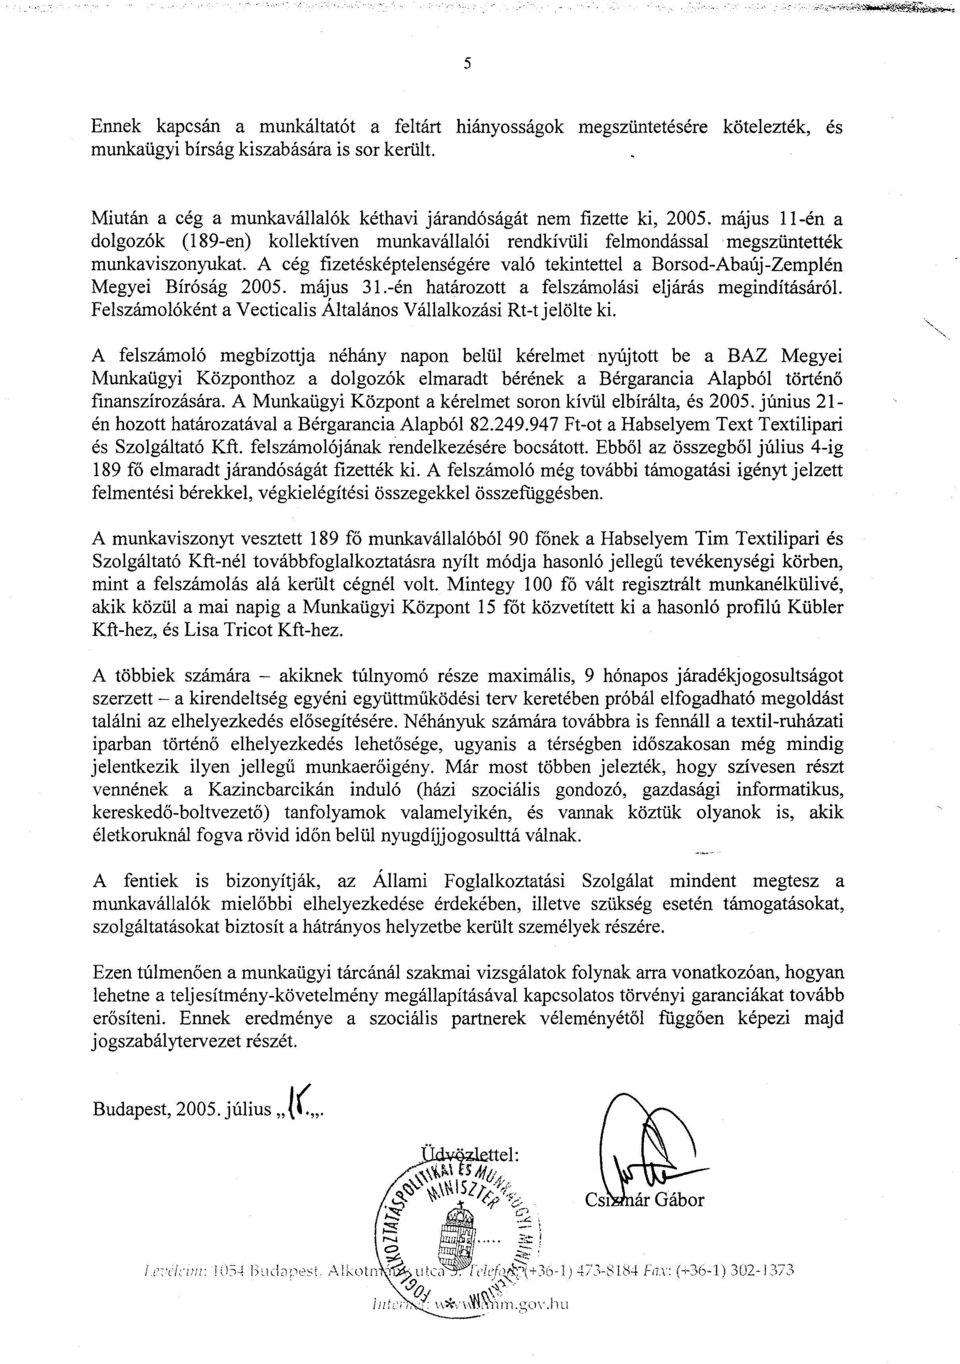 A cég fizetésképtelenségére való tekintettel a Borsod-Abaúj-Zemplén Megyei Bíróság 2005. május 31.-én határozott a felszámolási eljárás megindításáról.